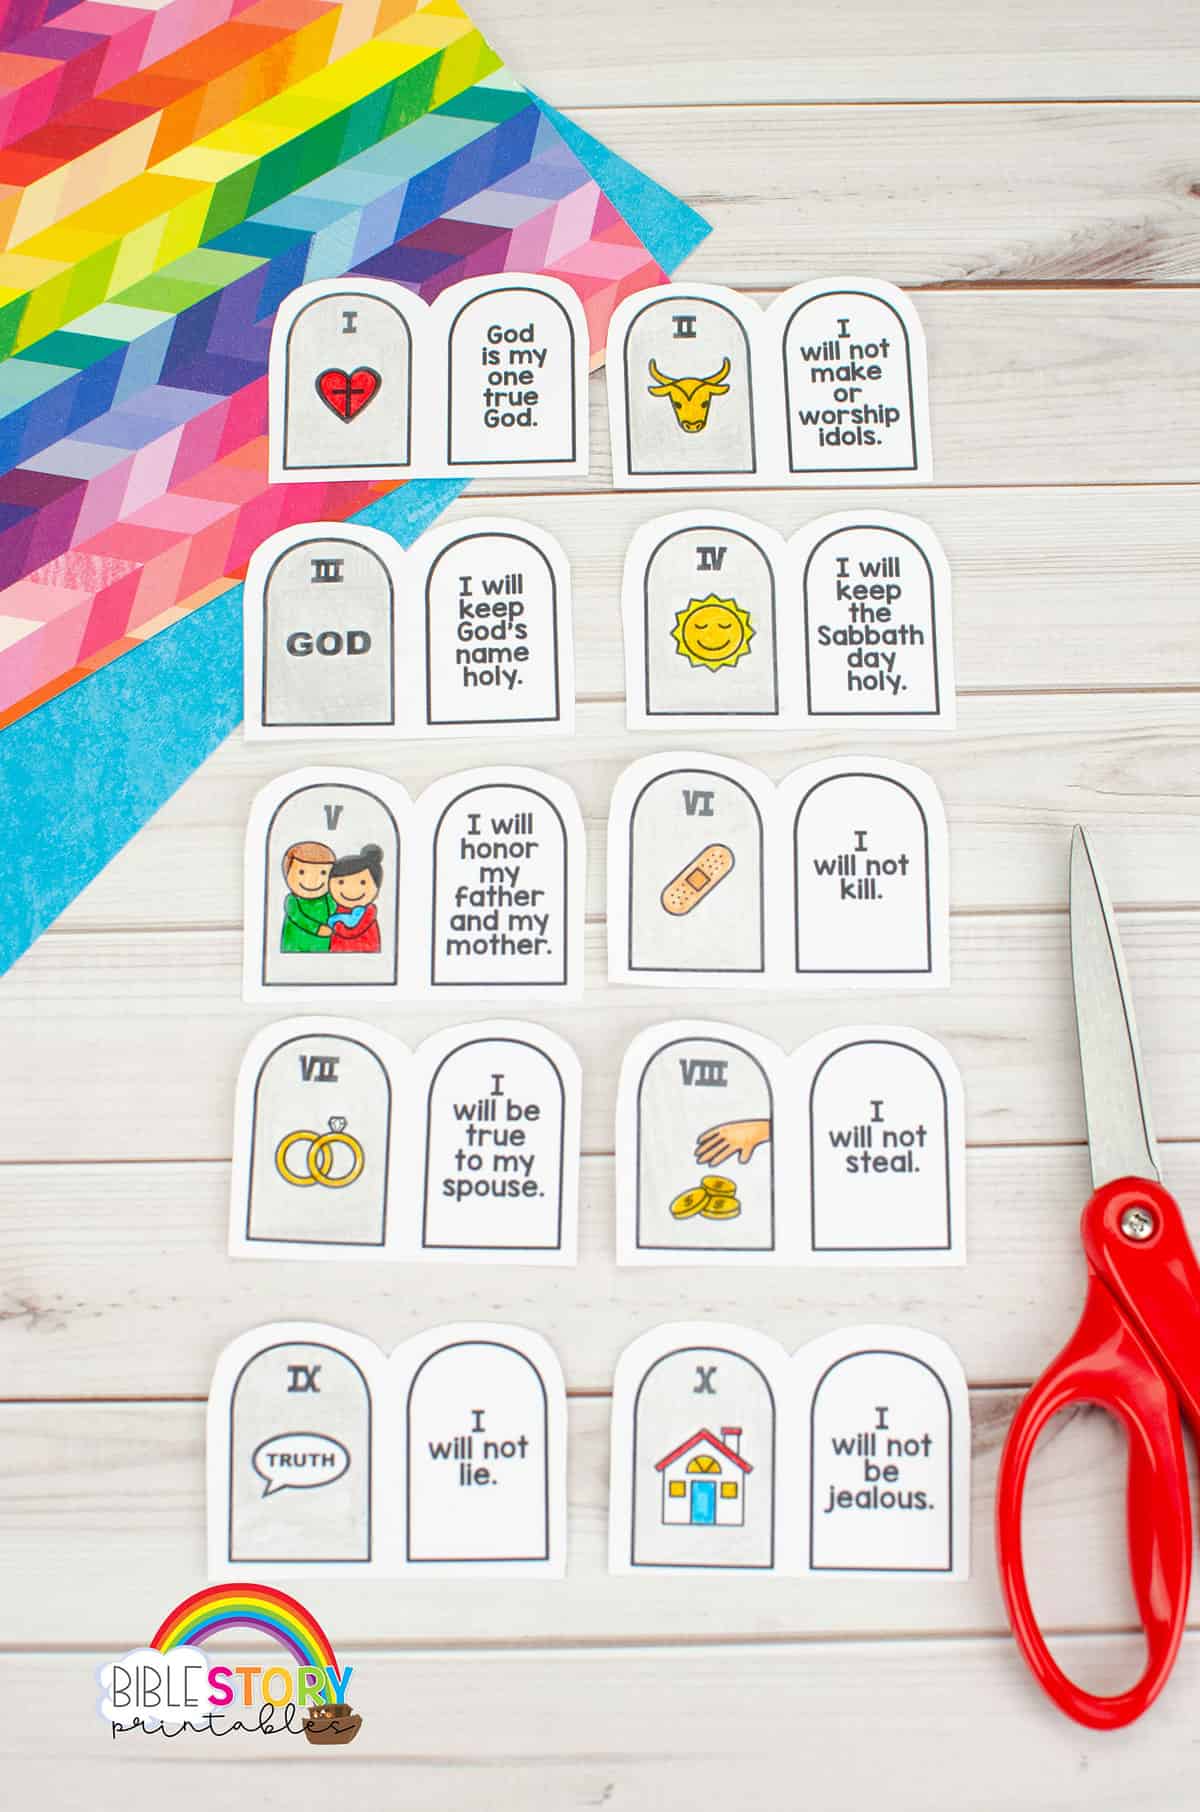 10 Commandments For Children Free Printable Ten Commandment Crafts 